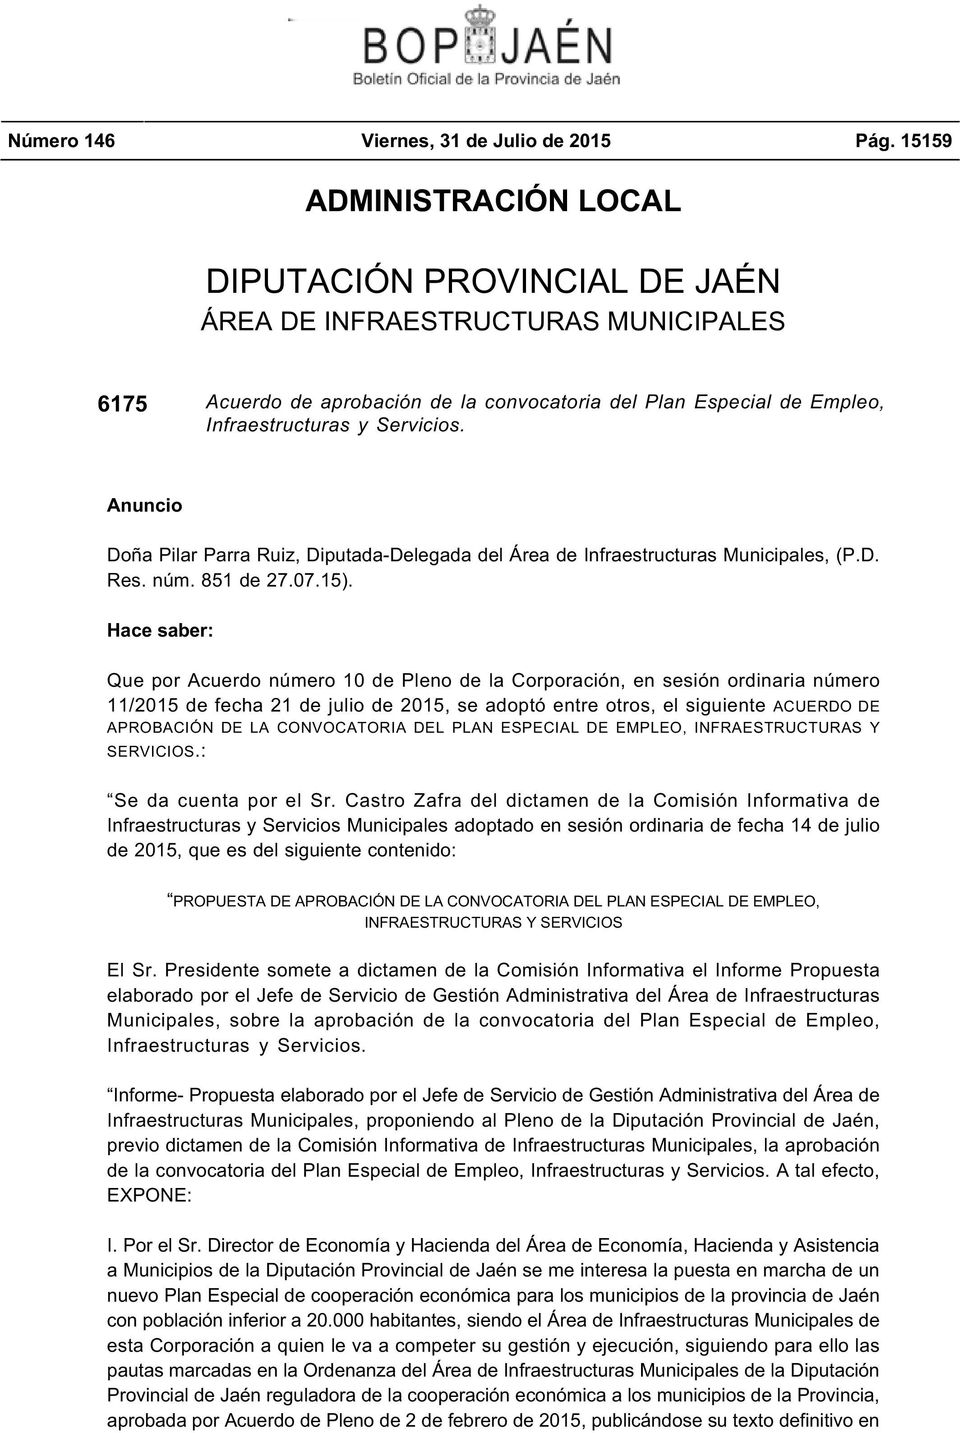 Anuncio Doña Pilar Parra Ruiz, Diputada-Delegada del Área de Infraestructuras Municipales, (P.D. Res. núm. 851 de 27.07.15).